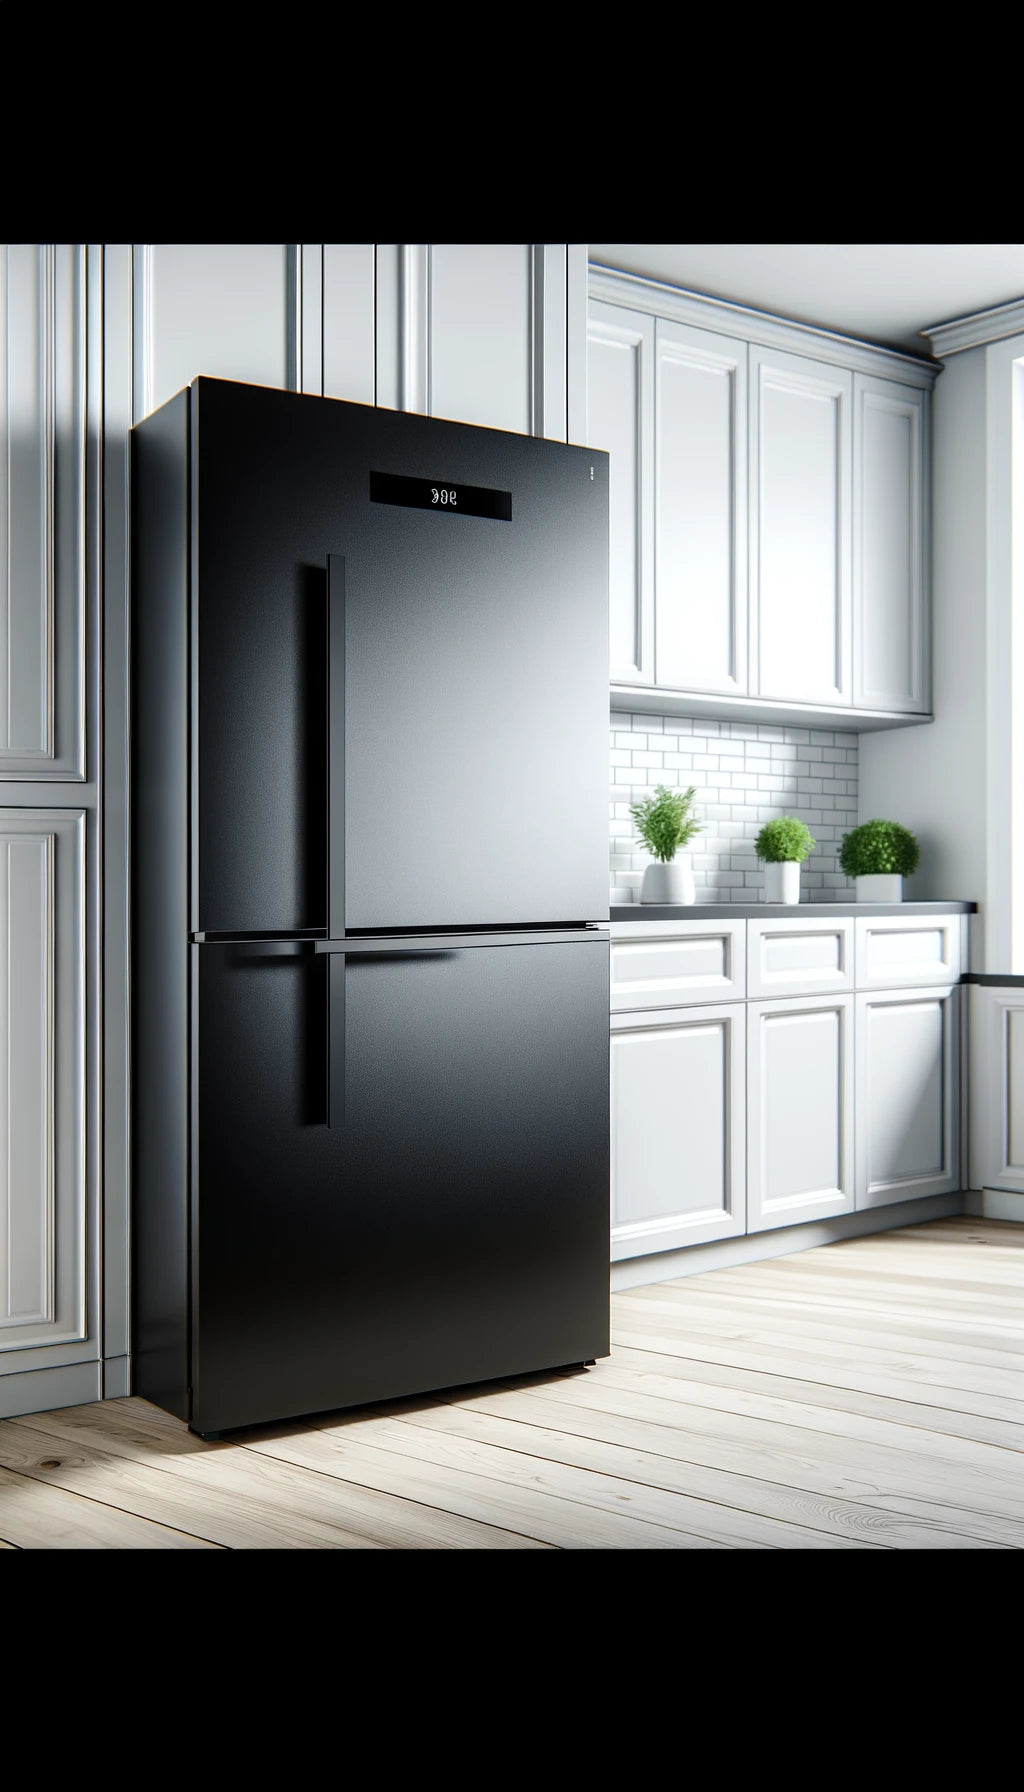 Black Refrigerator | Fridge.com